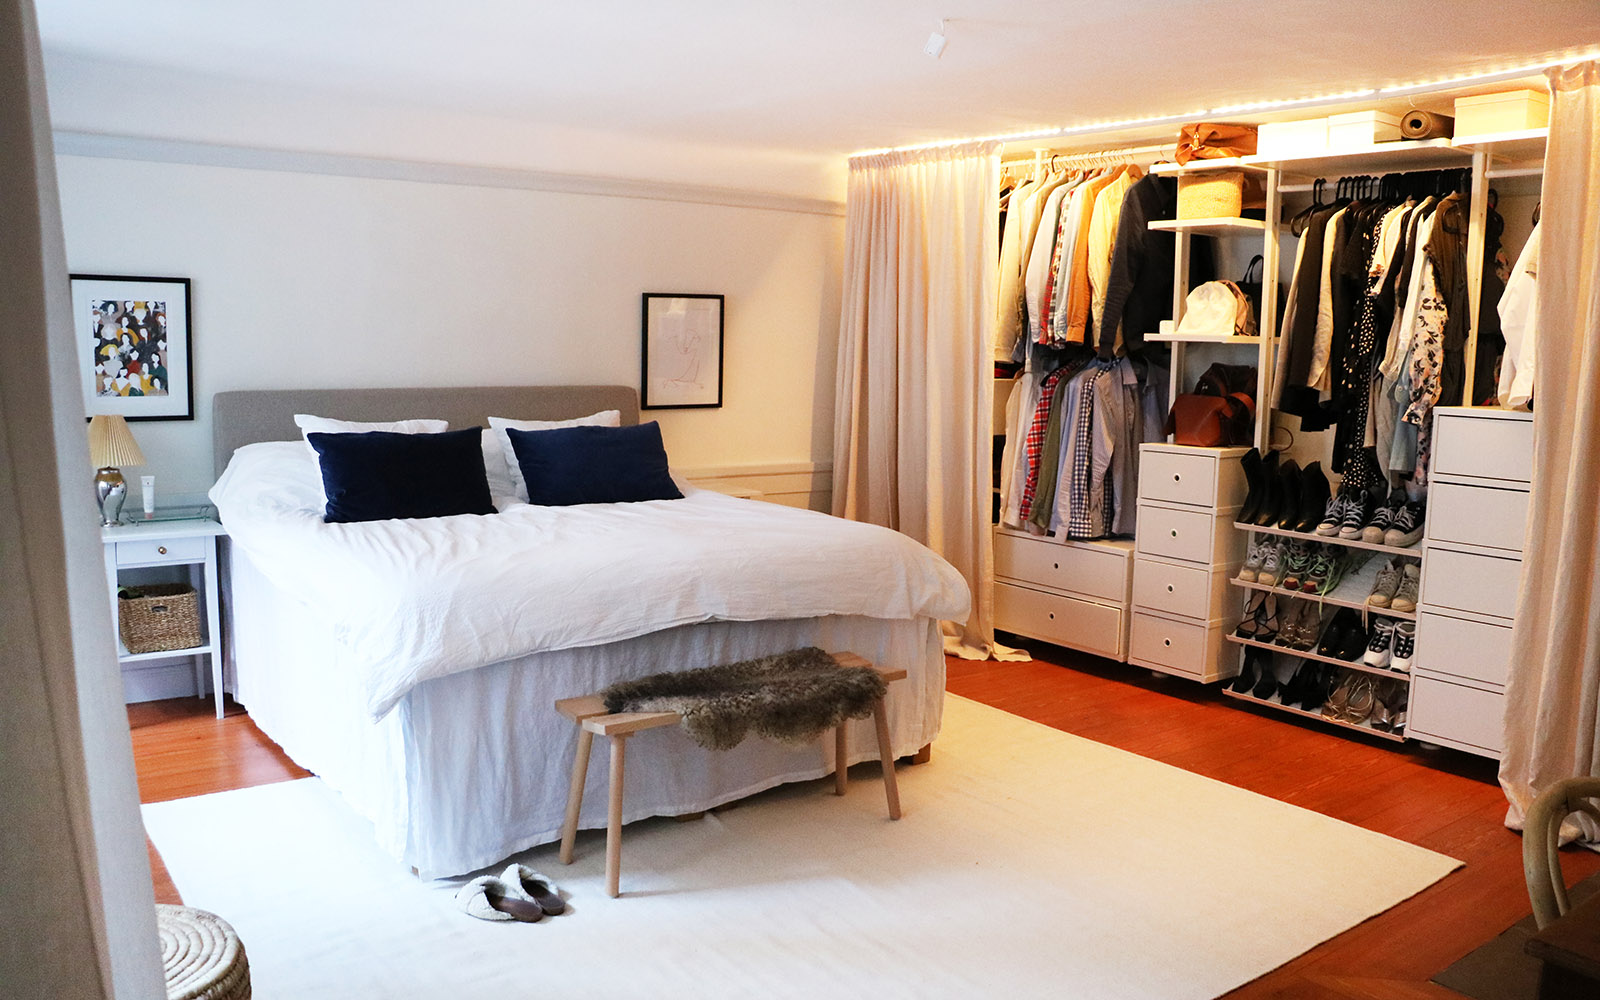 Ett sovrum med en stor säng med vitt överkast. En garderob längs hela väggen är öppen och man ser kläder och skor i den.